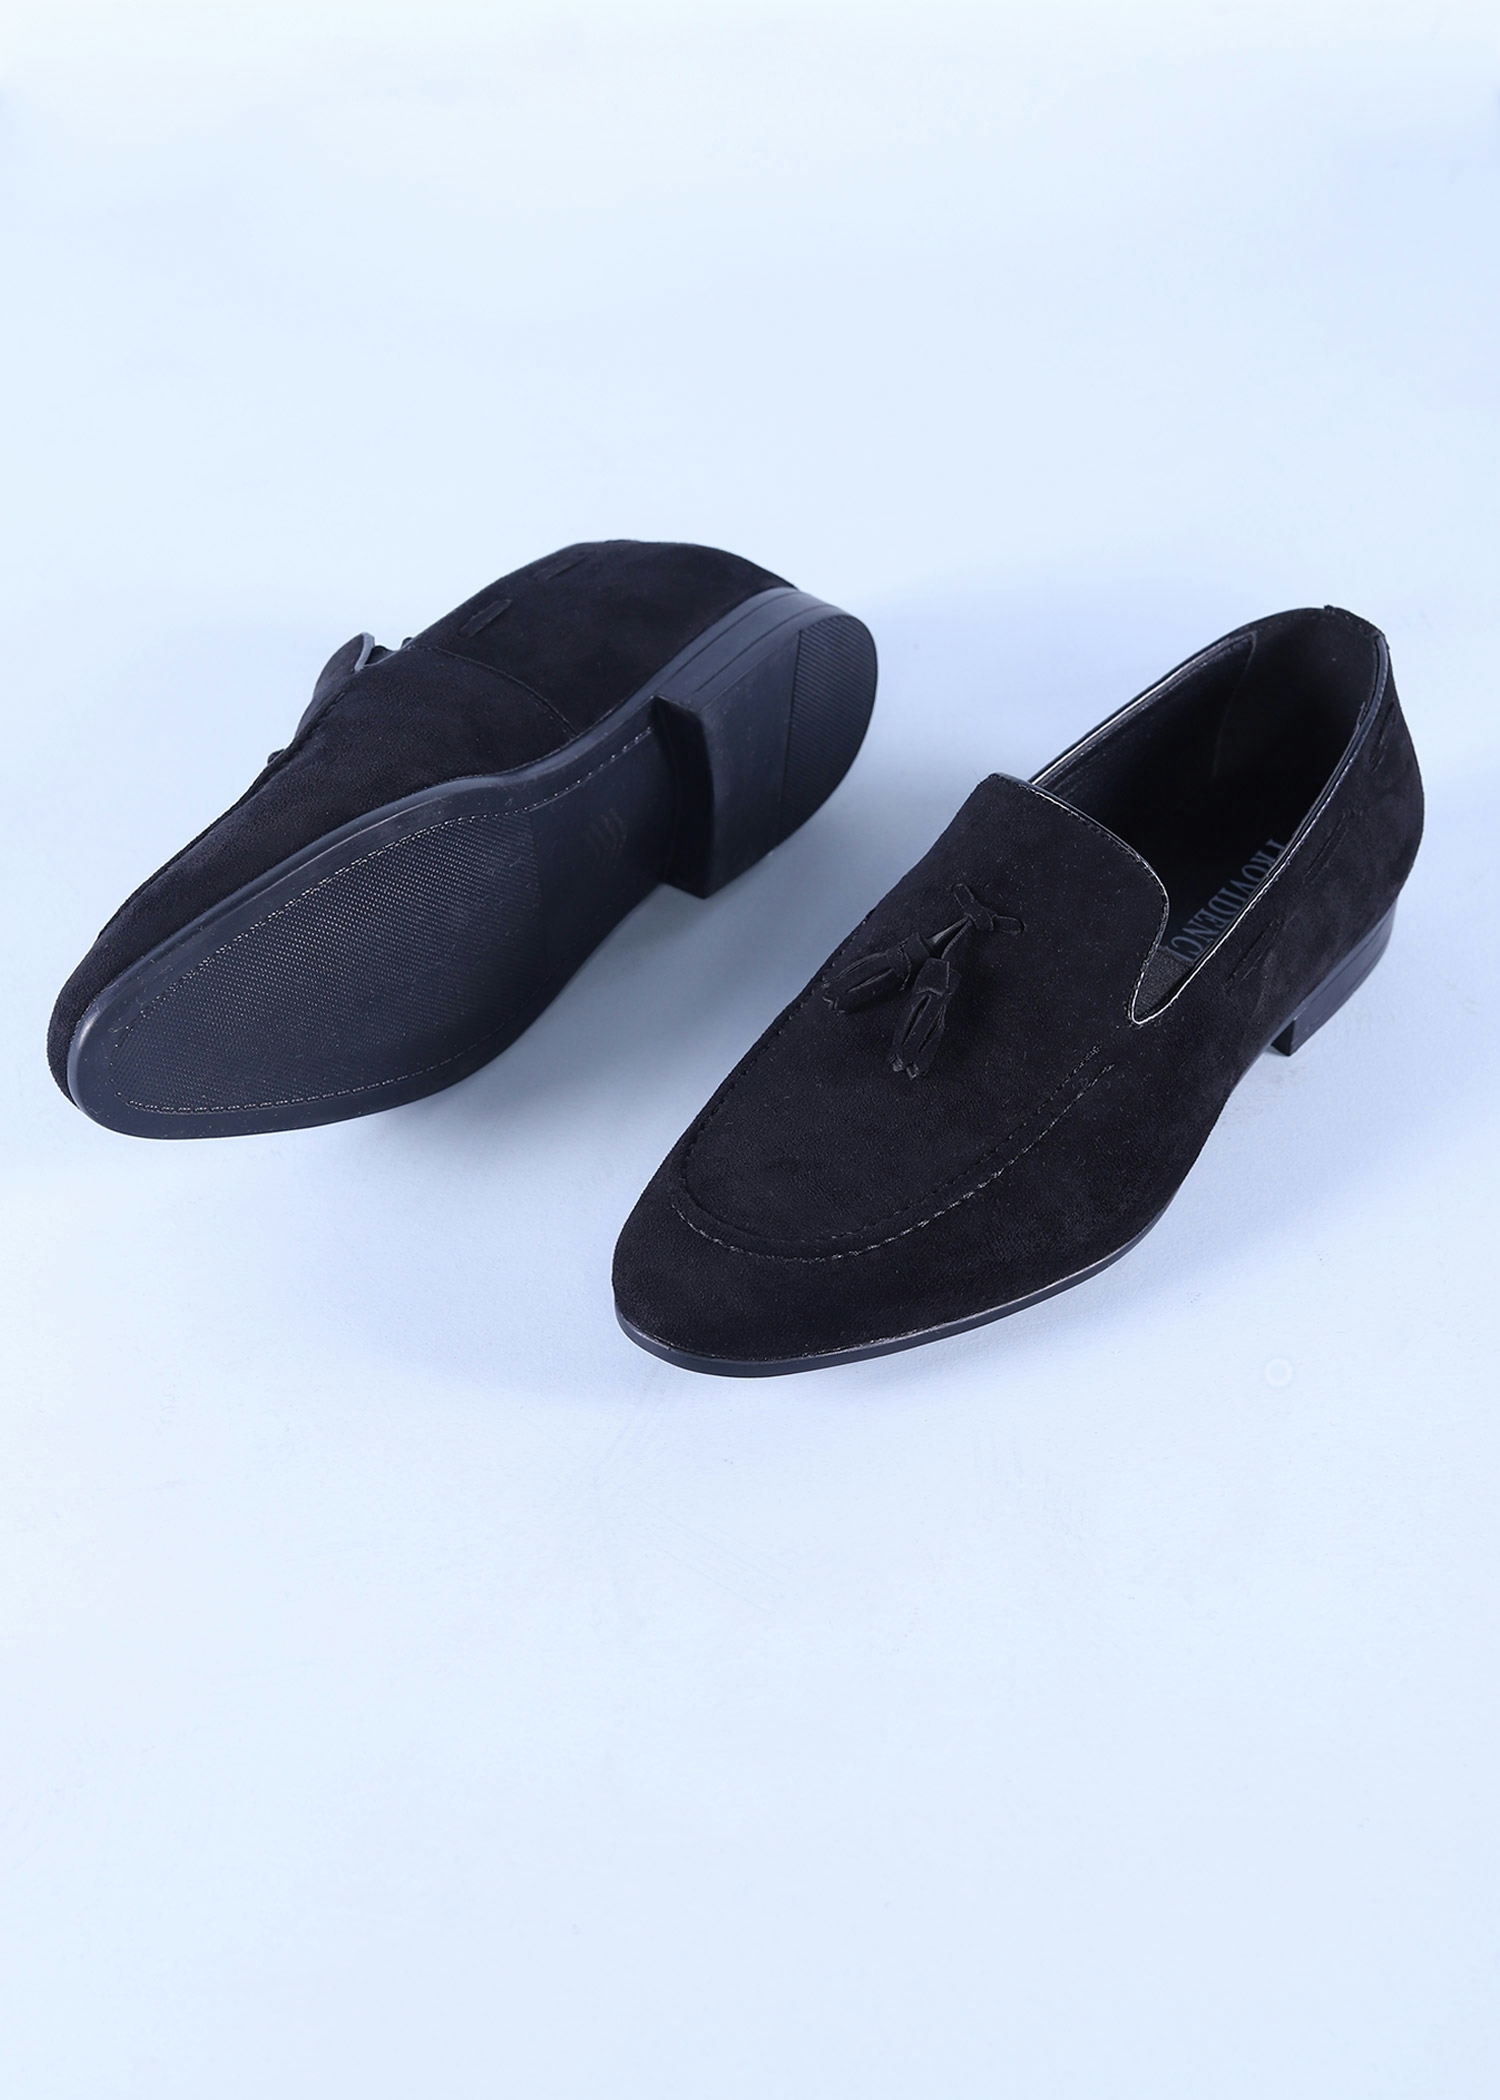 ebru mens shoes black color sole